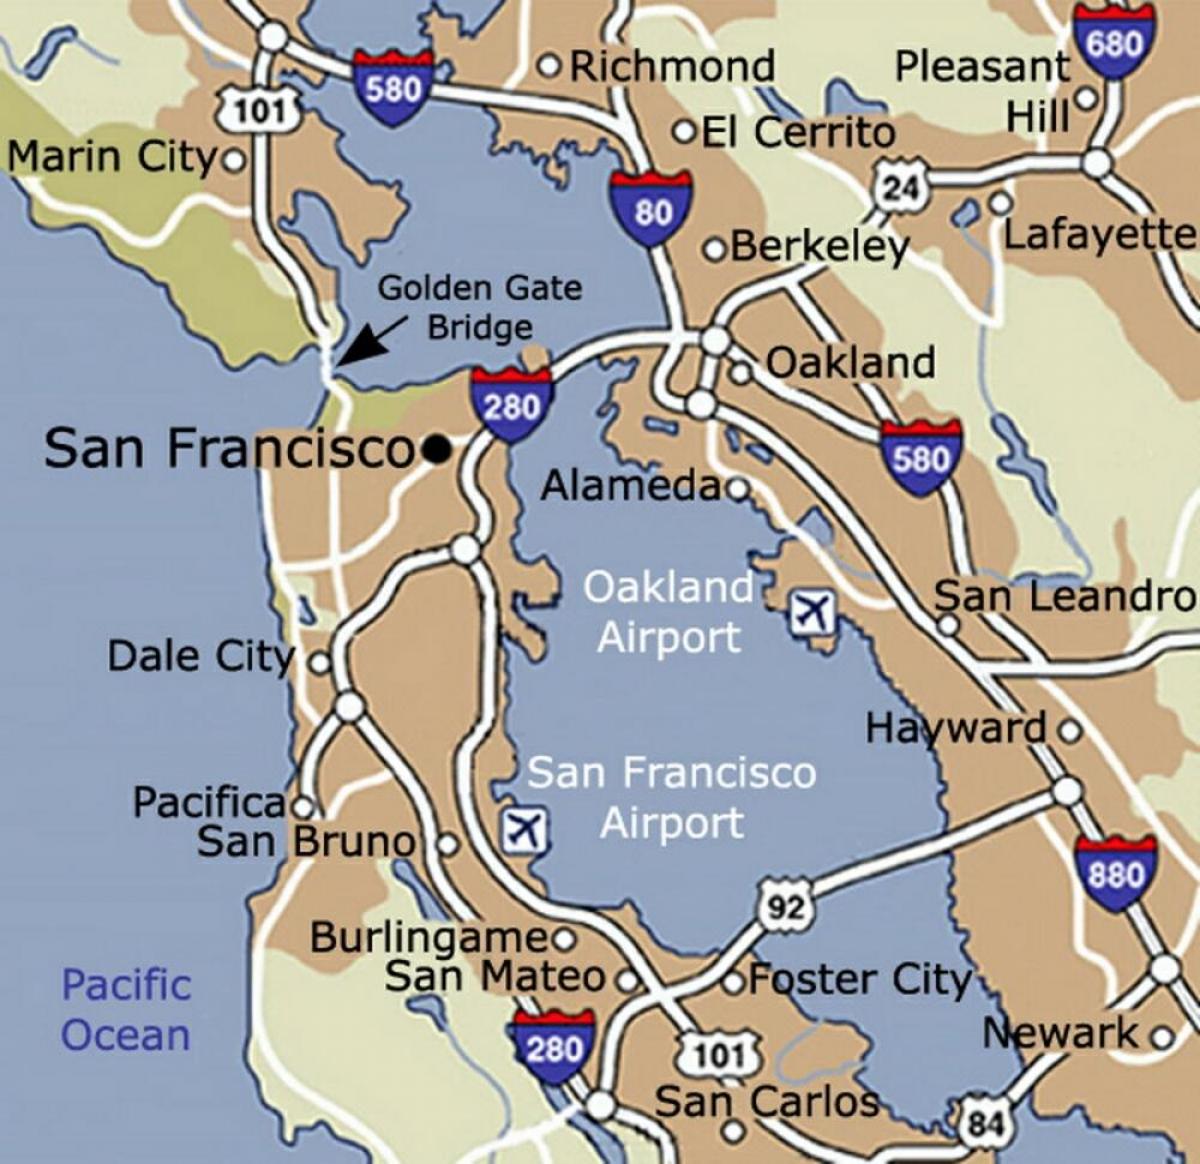 Karta över San Francisco airport och det omgivande området